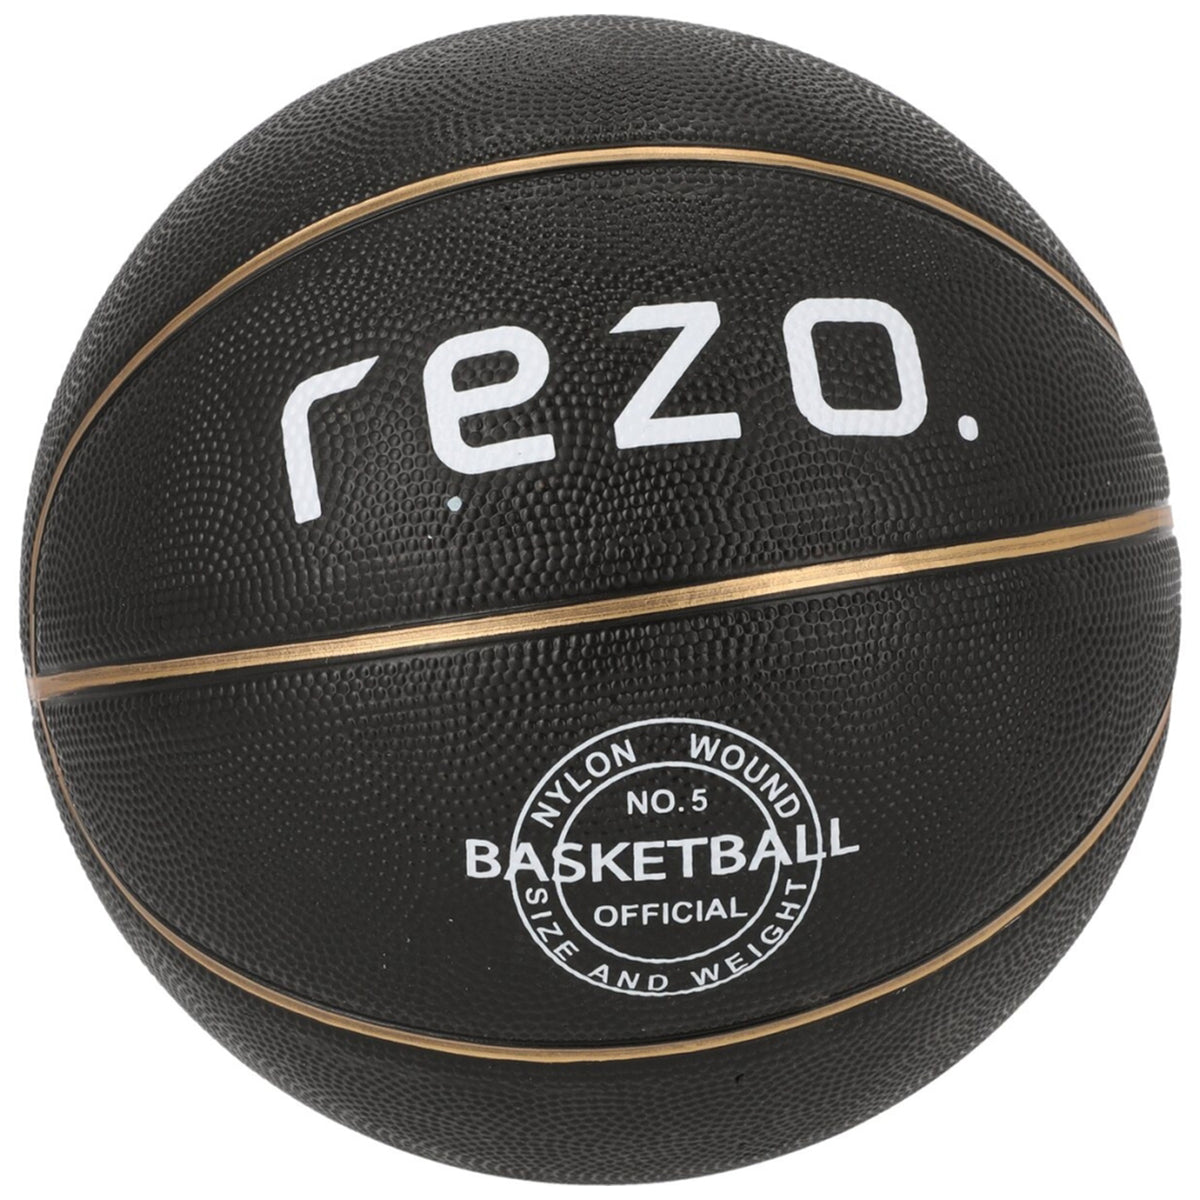 Rezo Basketball: Size 7